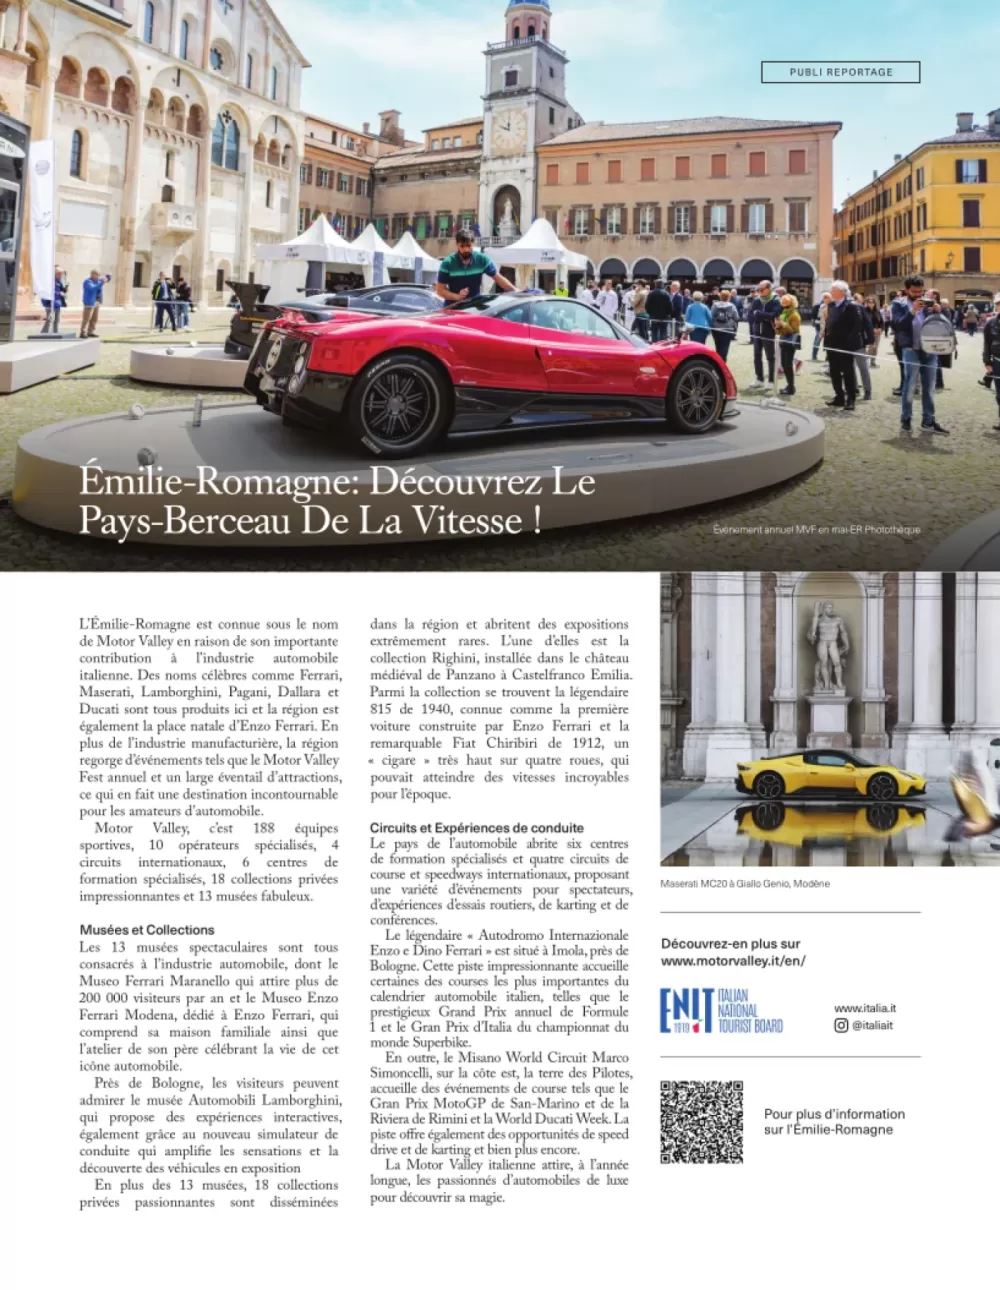 Emilia-Romagna: esplora la terra dove è nata la velocità - CAA Québec Magazine (francese) - Toronto